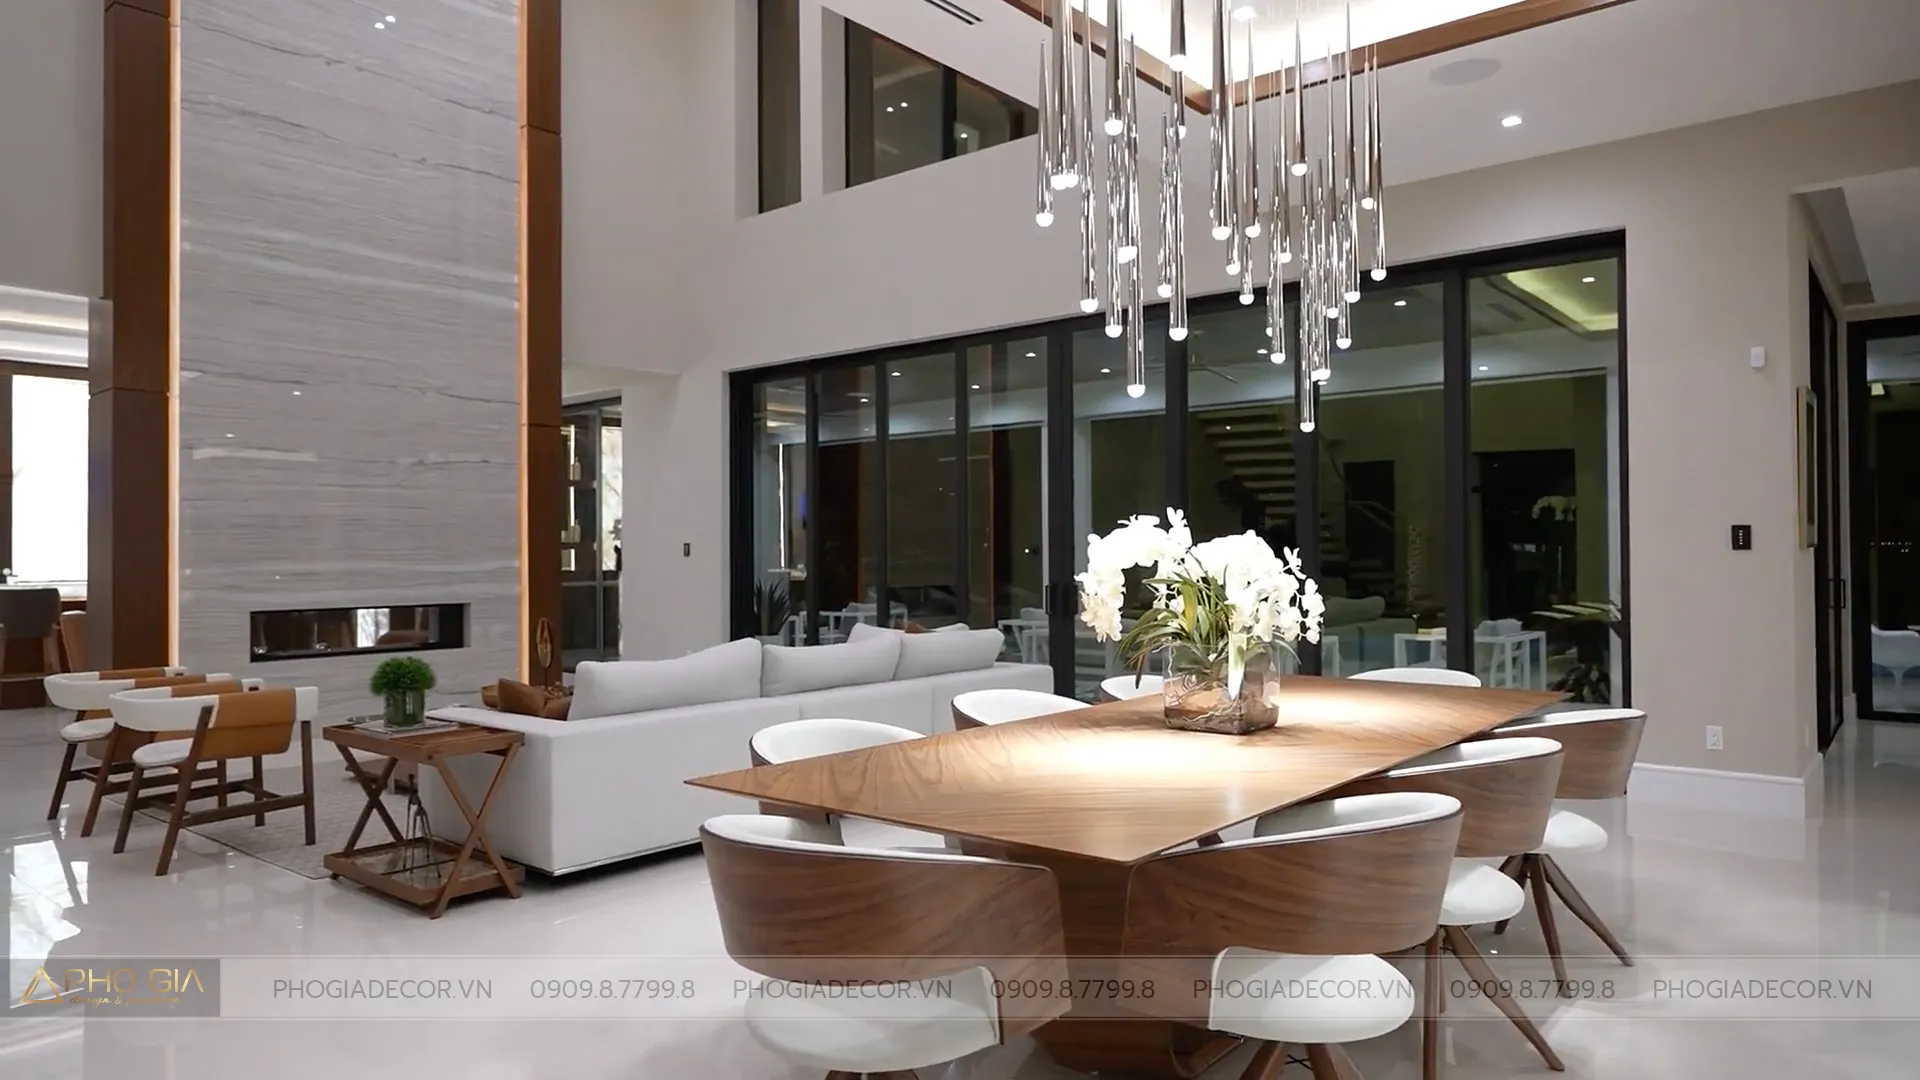 Thiết kế nội thất biệt thự phong cách hiện đại giúp mang lại một không gian đầy sự hiện đại, tiện nghi về công năng. Điểm nhấn ấn tượng chính là dòng gỗ Walnut (Óc Chó)